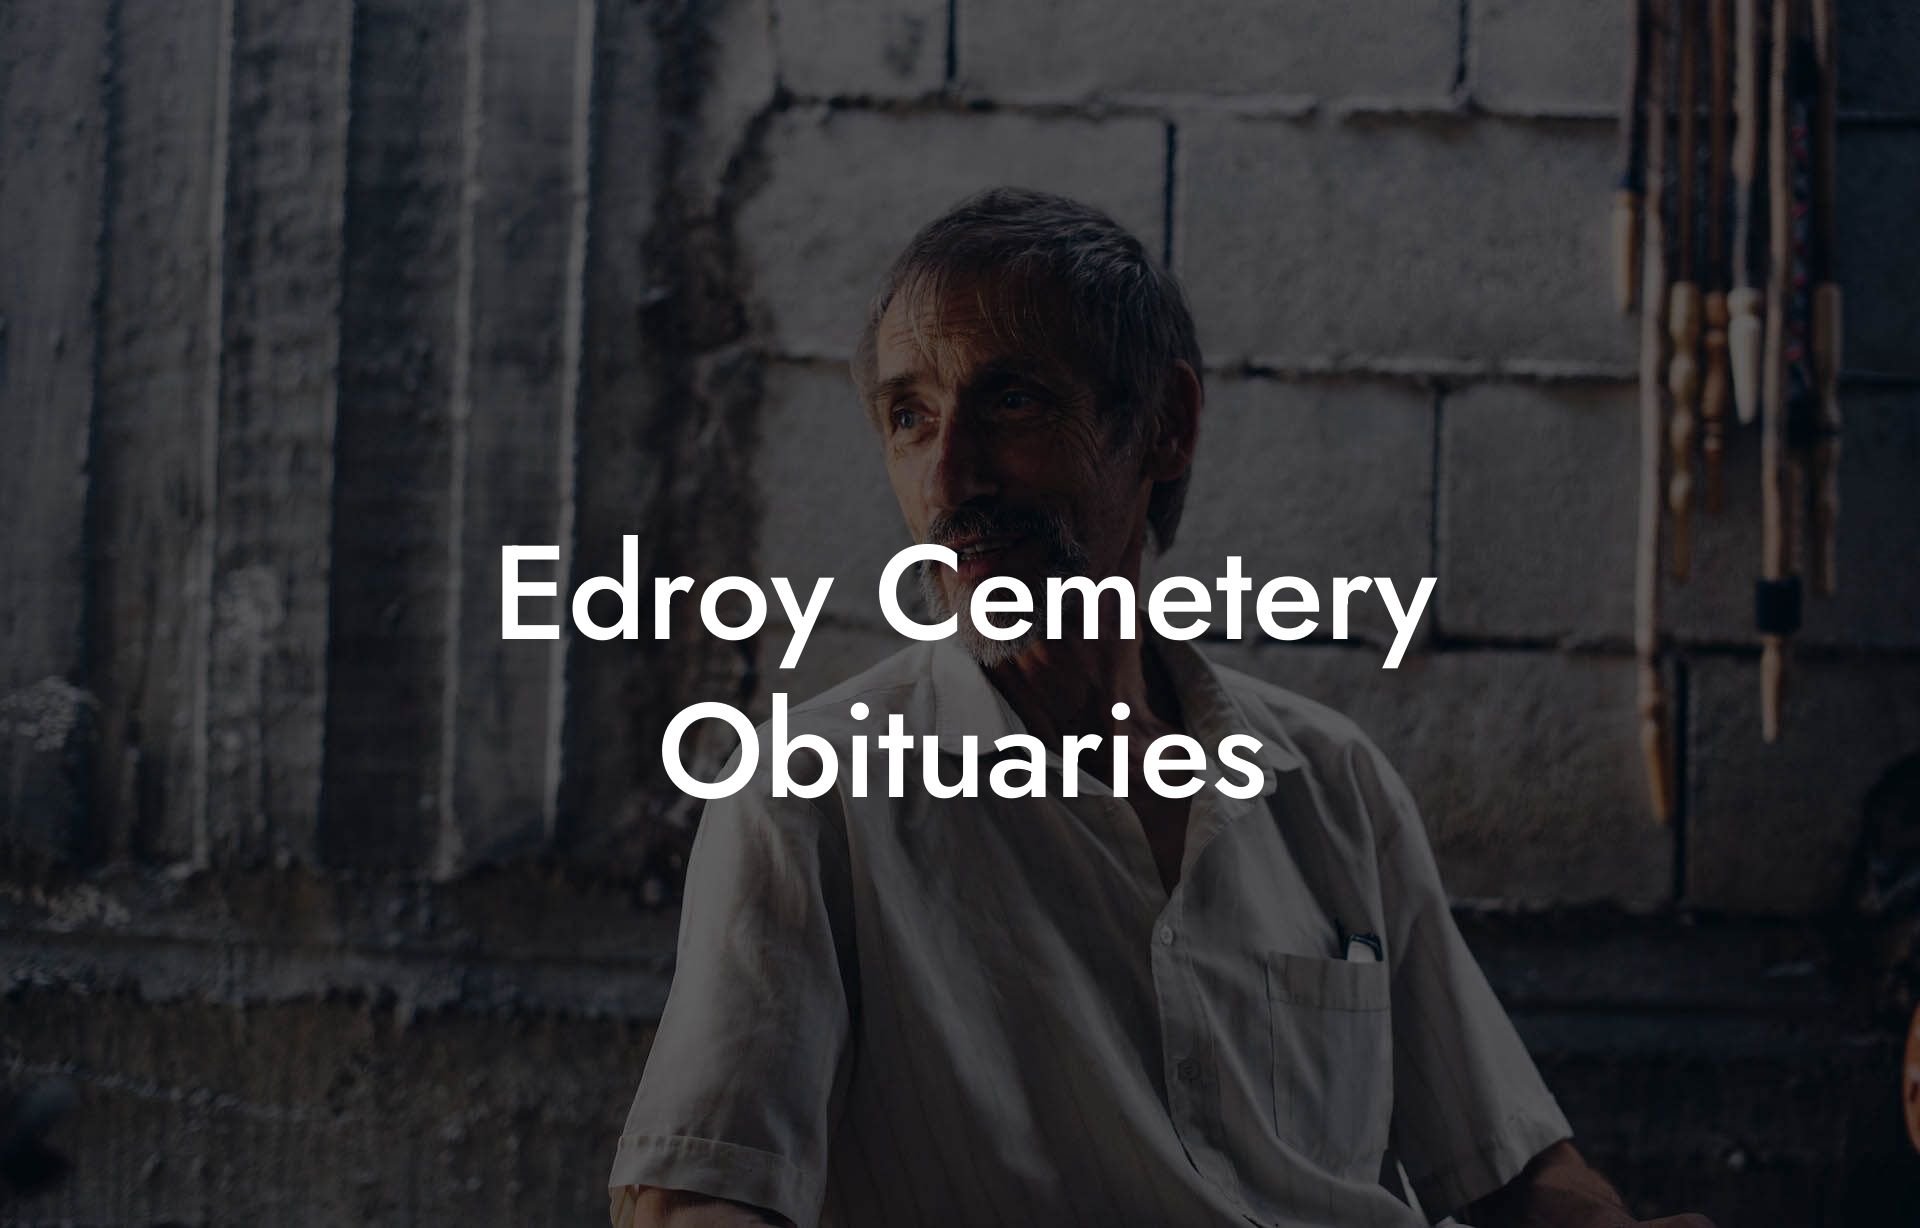 Edroy Cemetery Obituaries